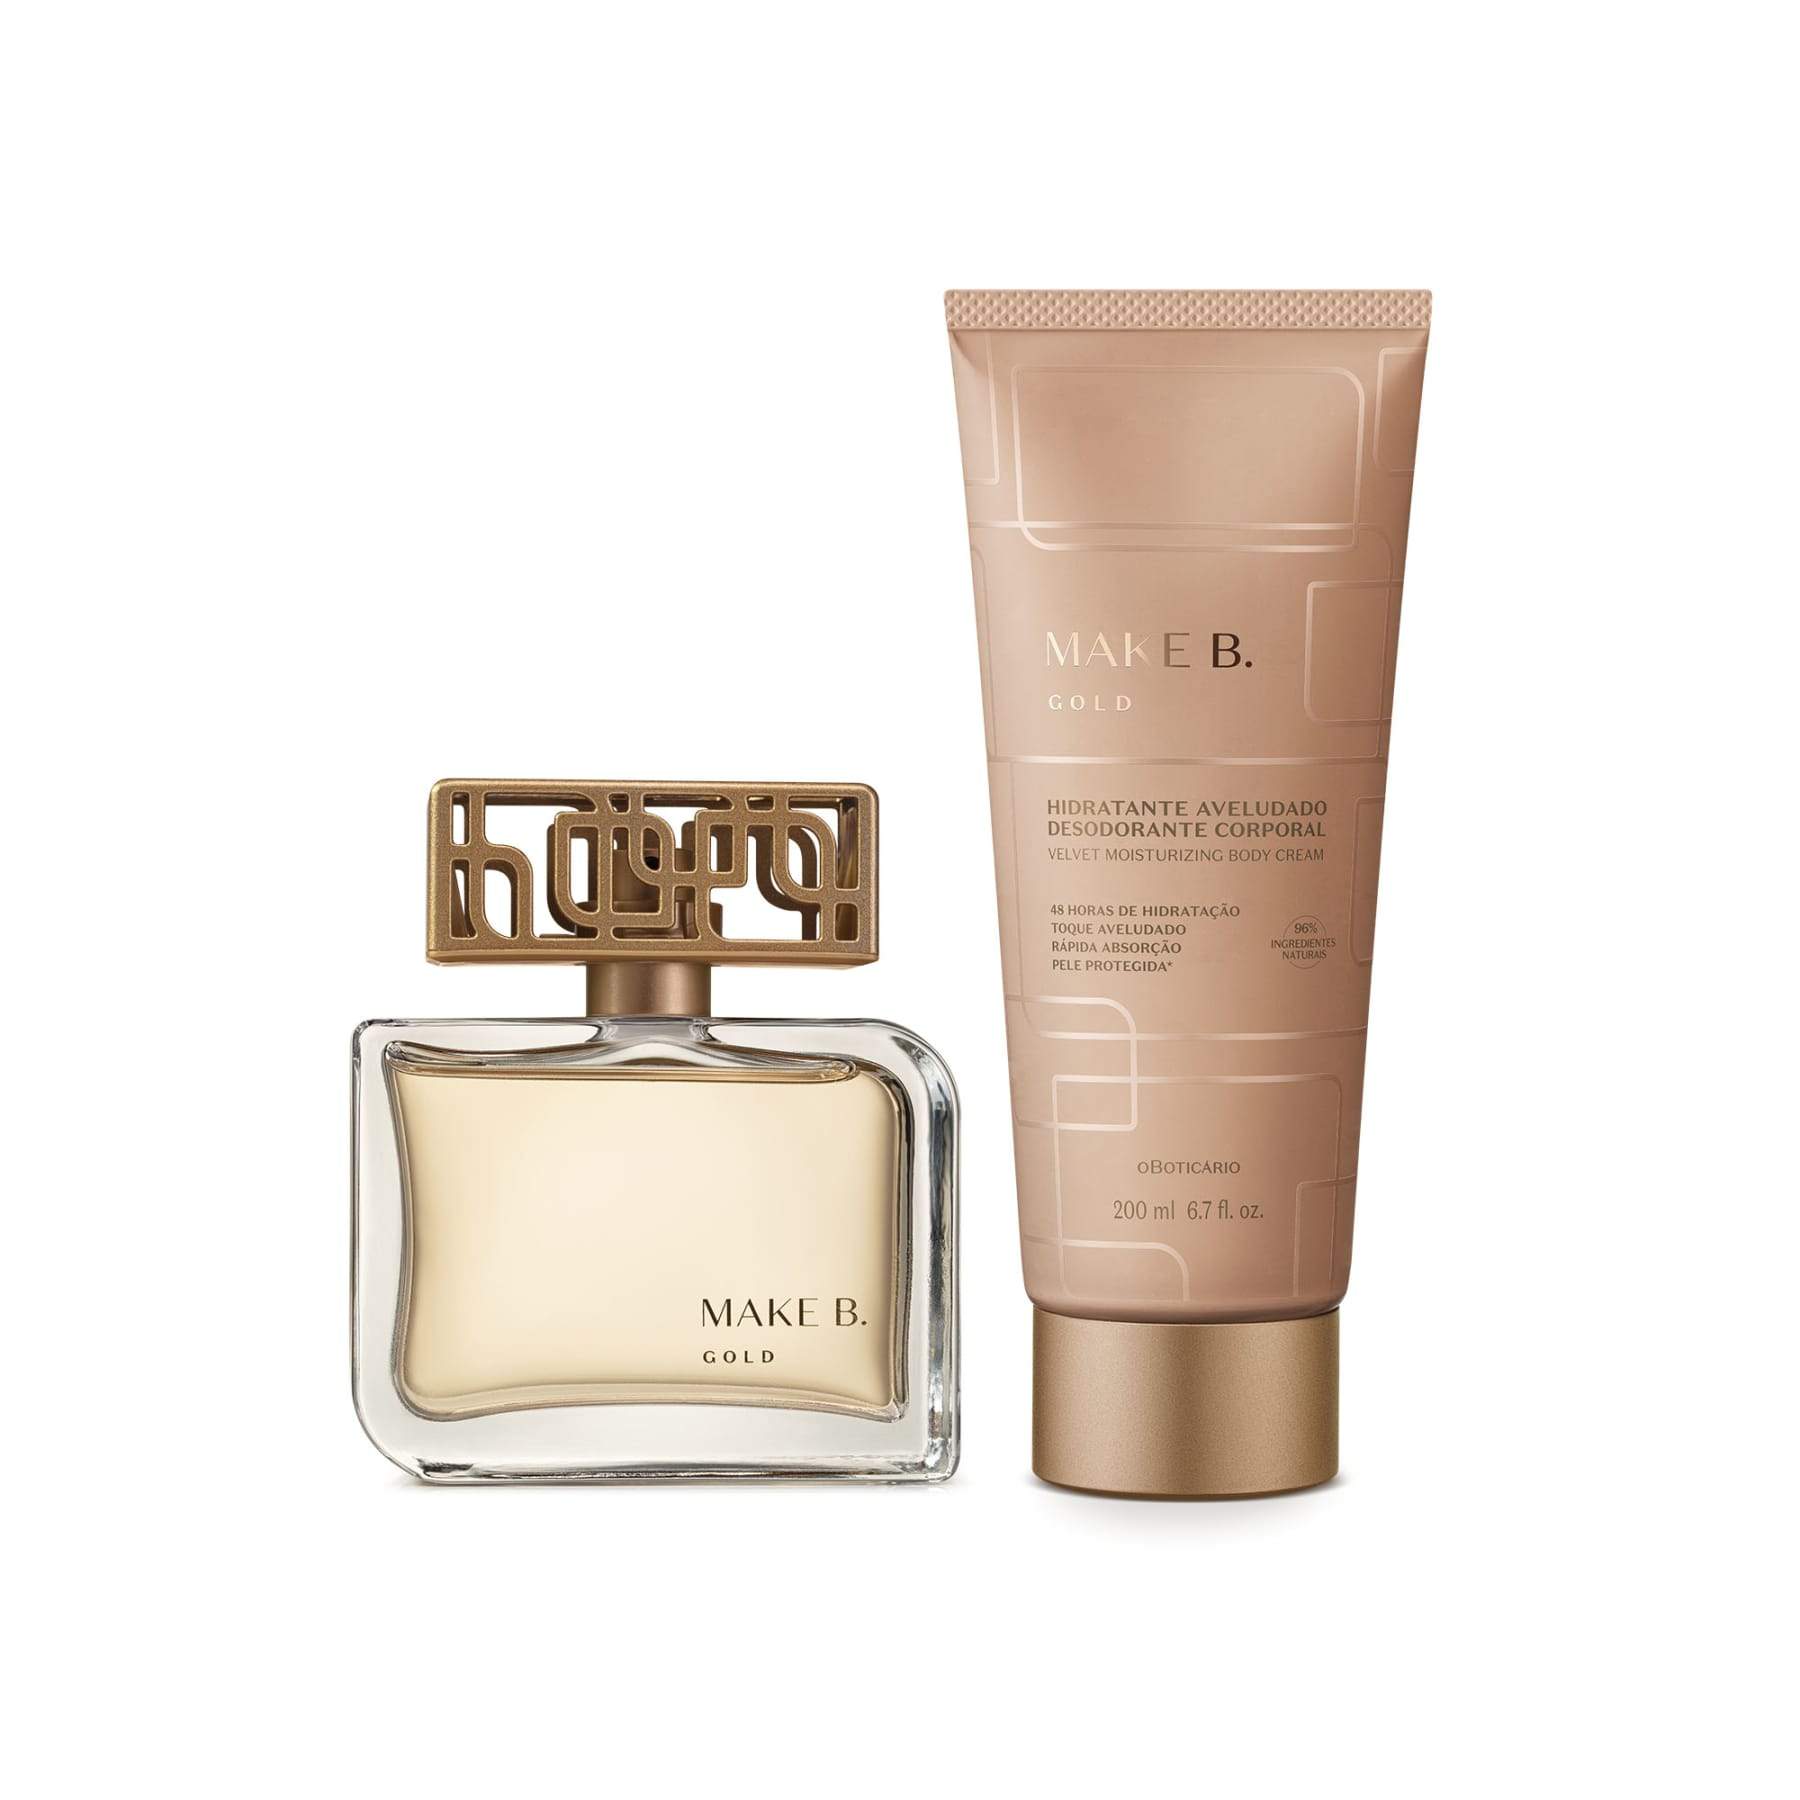 Kit Make B. Gold: Eau De Parfum 75ml + Velvety Cream 200g - o Boticario